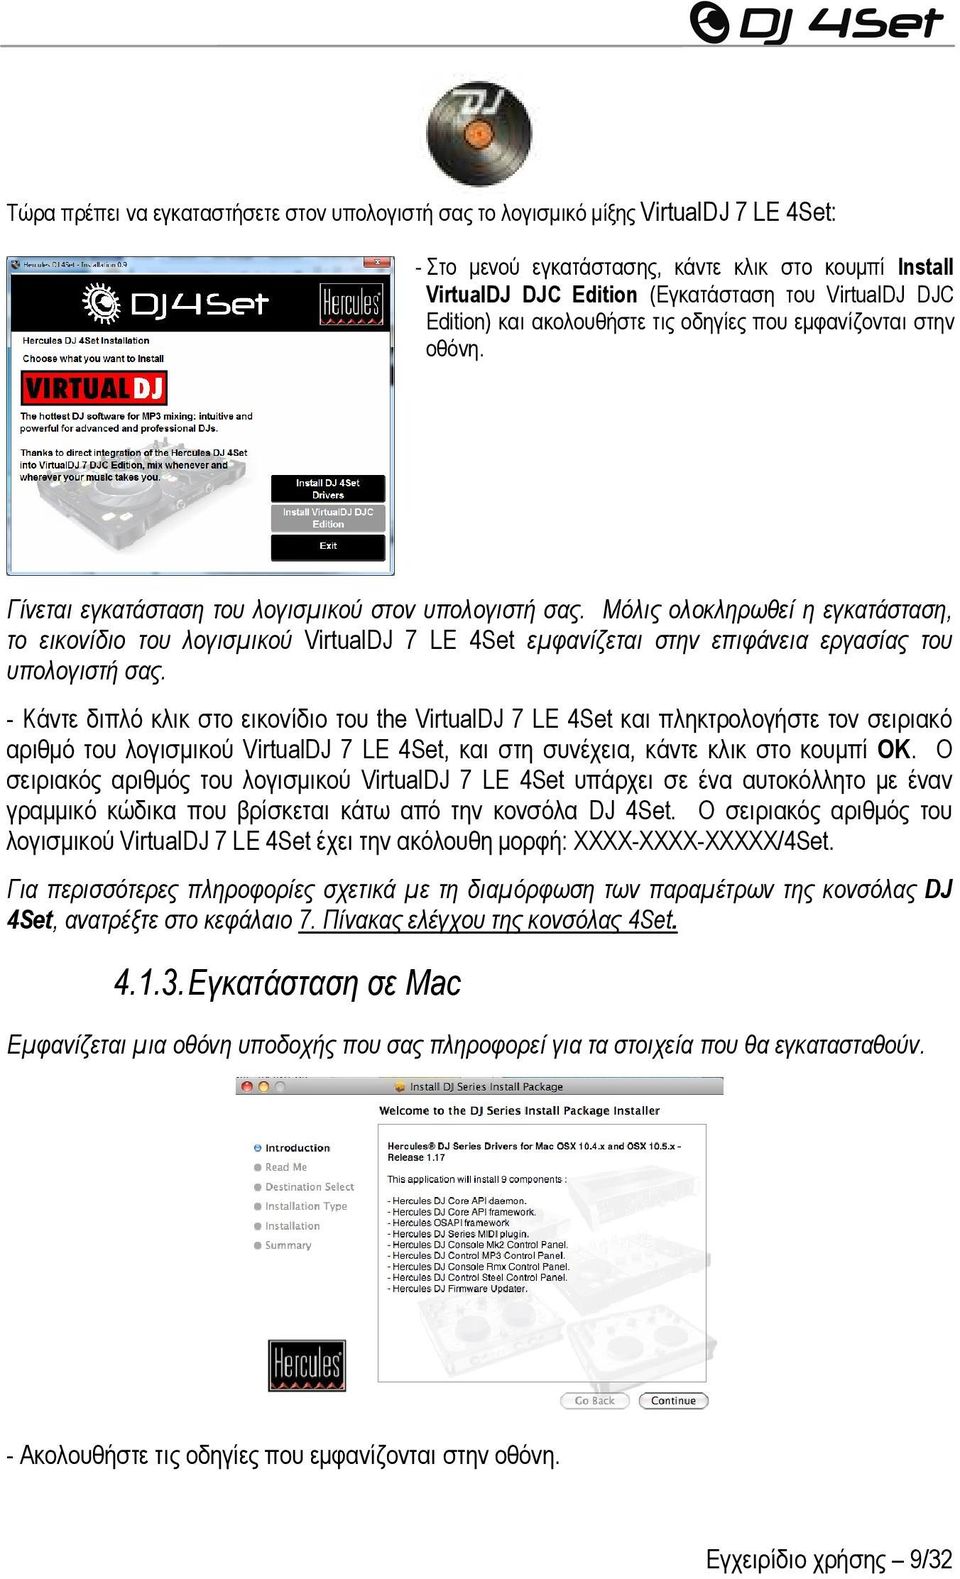 Μόλις ολοκληρωθεί η εγκατάσταση, το εικονίδιο του λογισμικού VirtualDJ 7 LE 4Set εμφανίζεται στην επιφάνεια εργασίας του υπολογιστή σας.